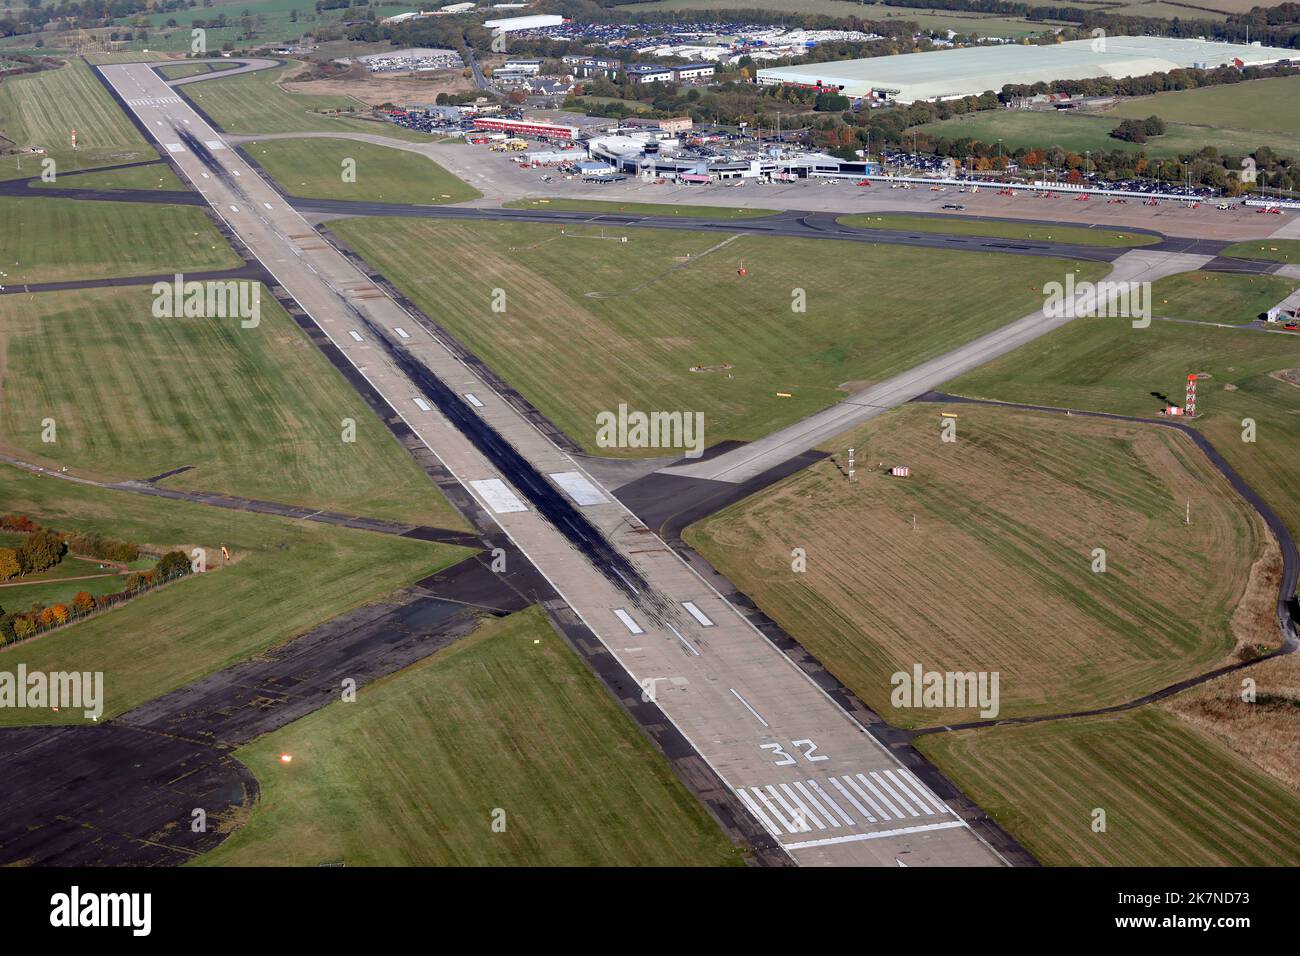 Vista aerea dell'Aeroporto Internazionale di Leeds Bradford, Regno Unito Foto Stock